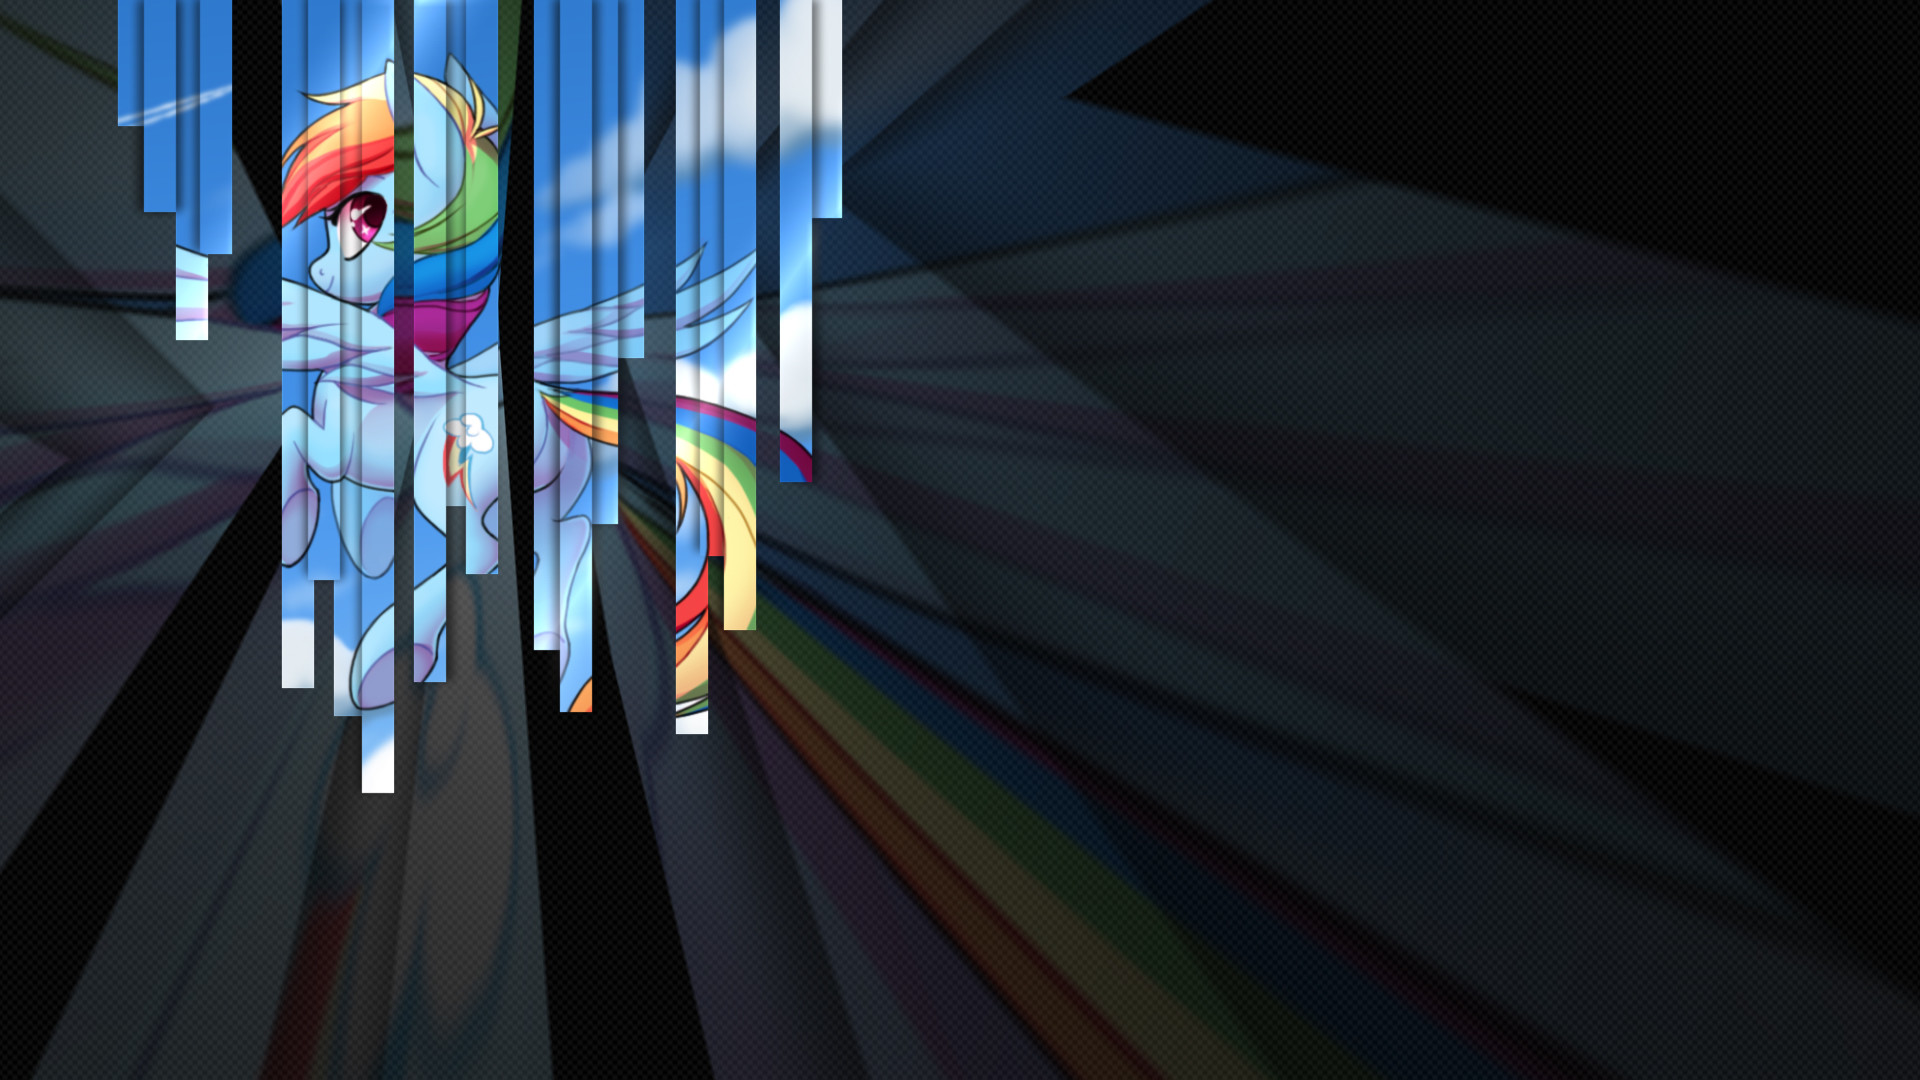 1920x1080 ... Rainbow Dash - Wallpaper [V.2] by Xris777